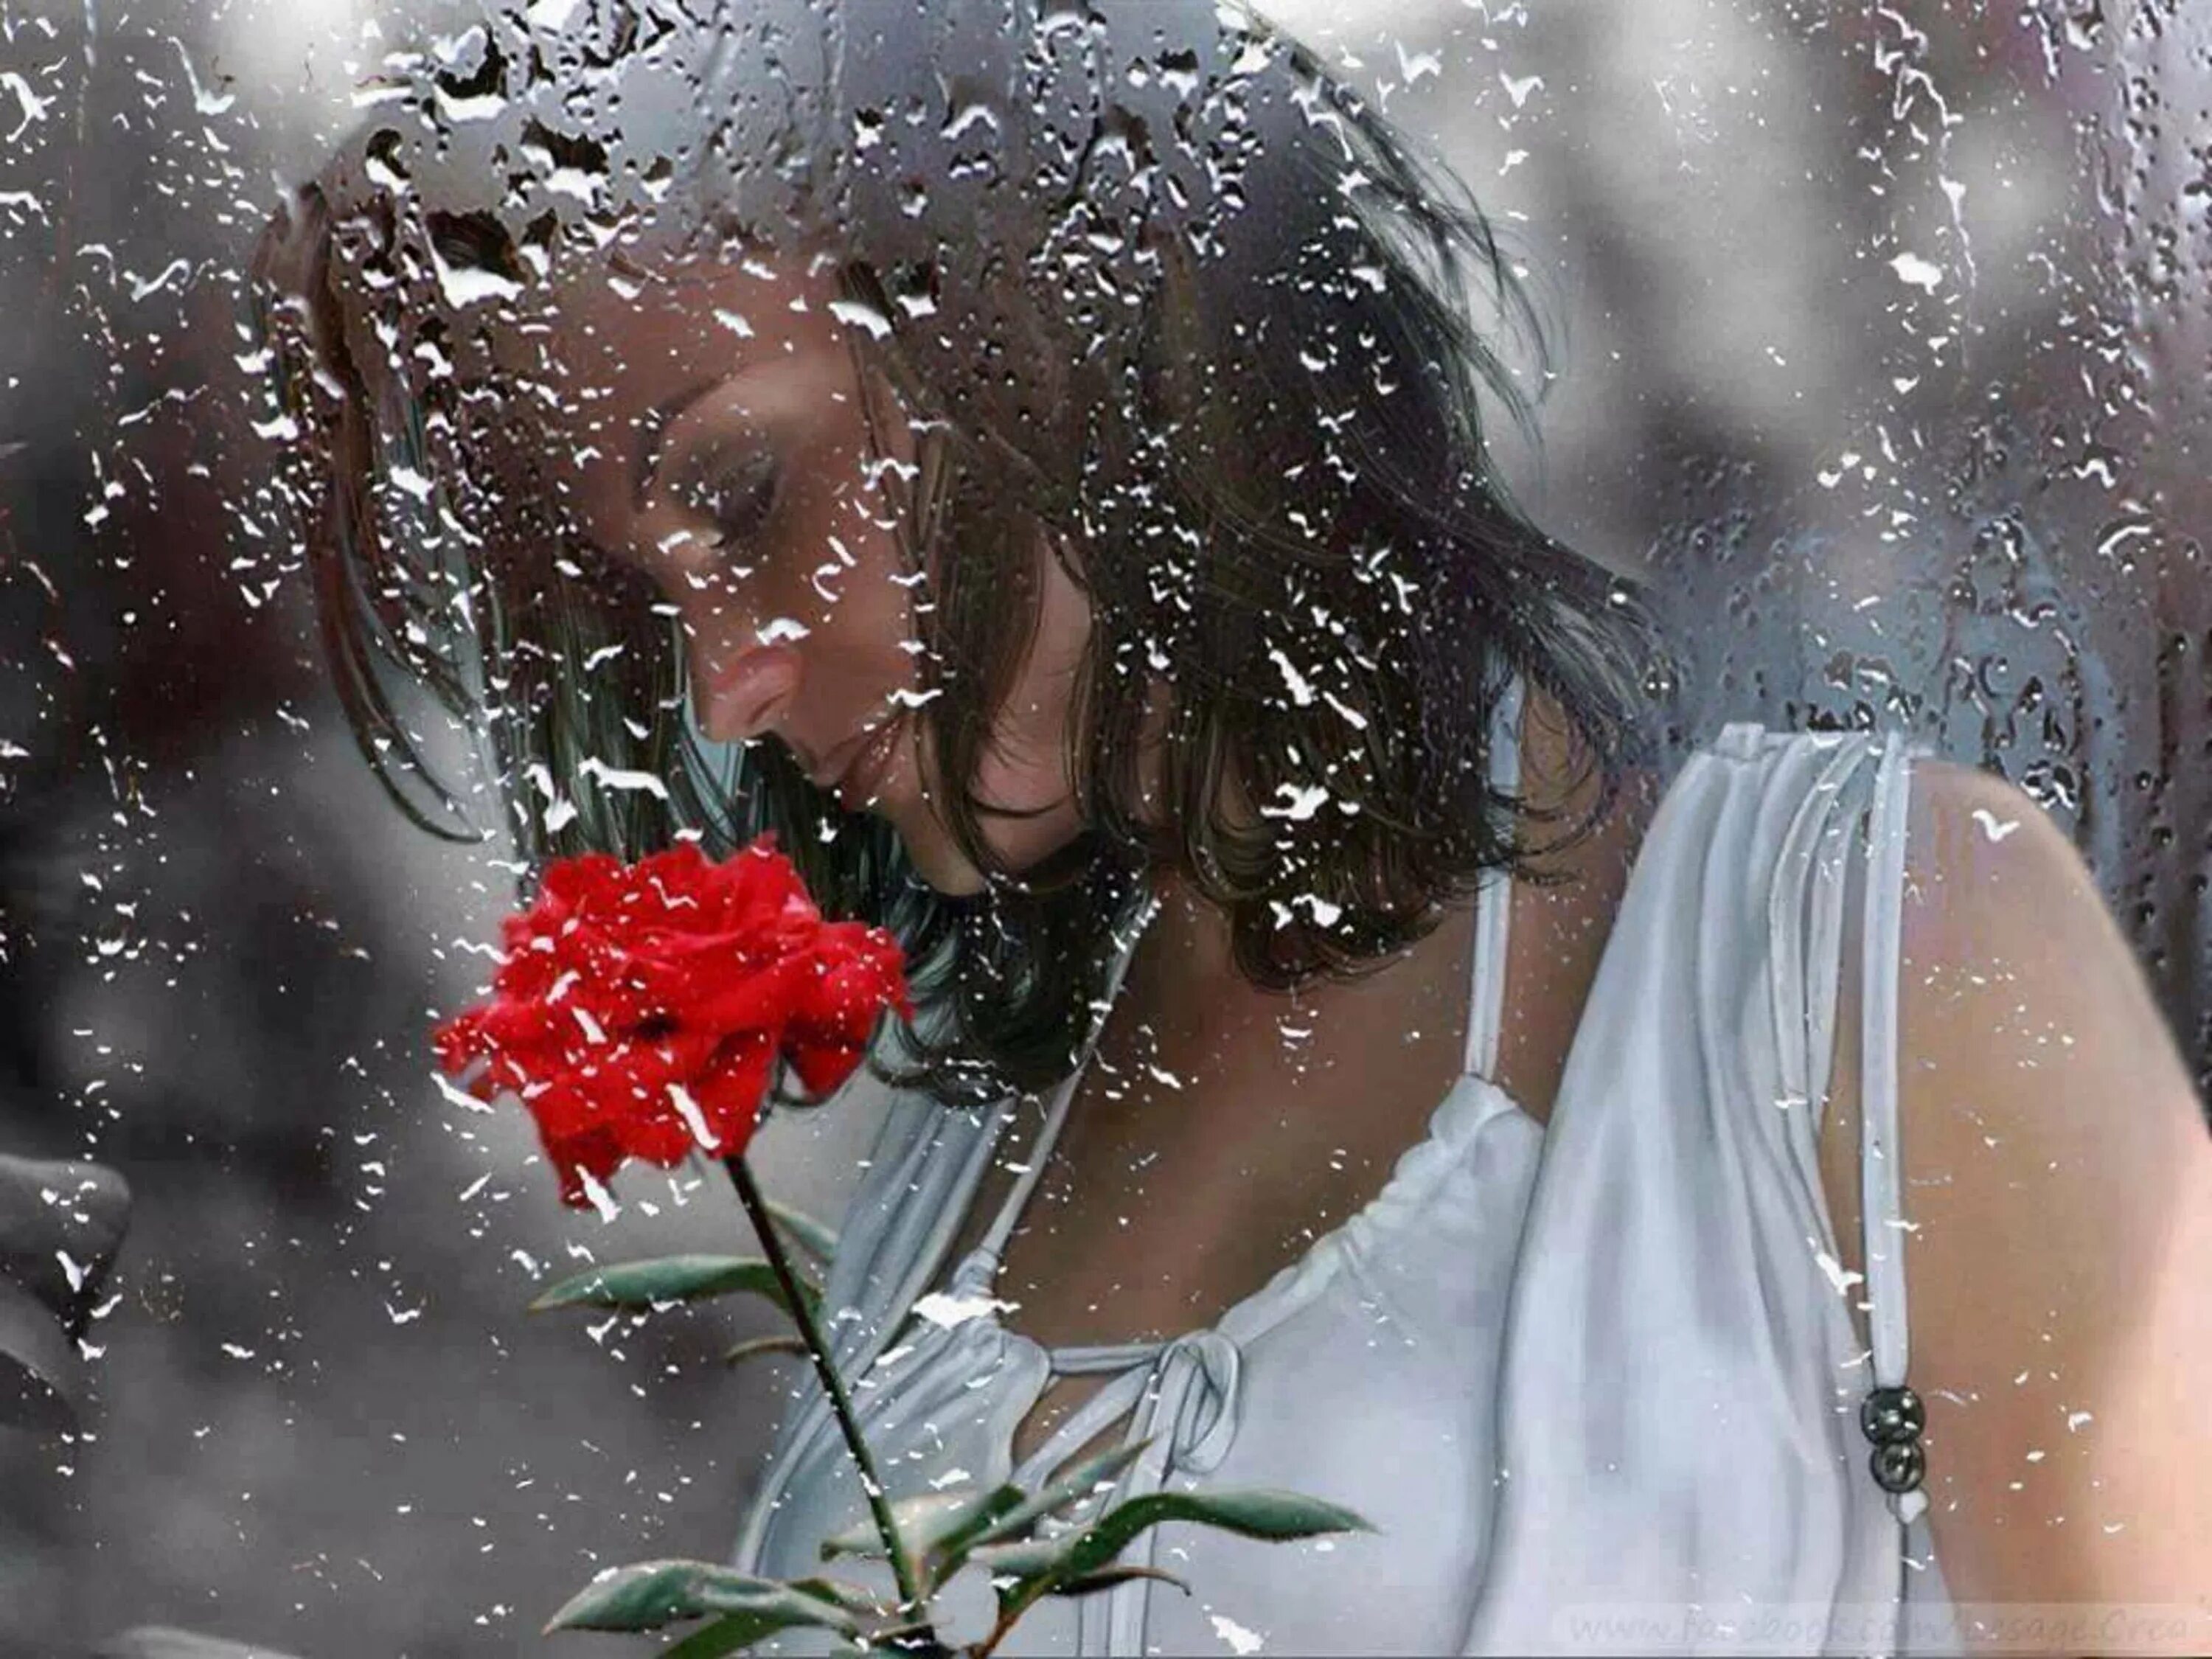 Песня ни капли души. Женщина дождя. Цветы на дождливом окне. Слезы души. Девушка за мокрым стеклом.